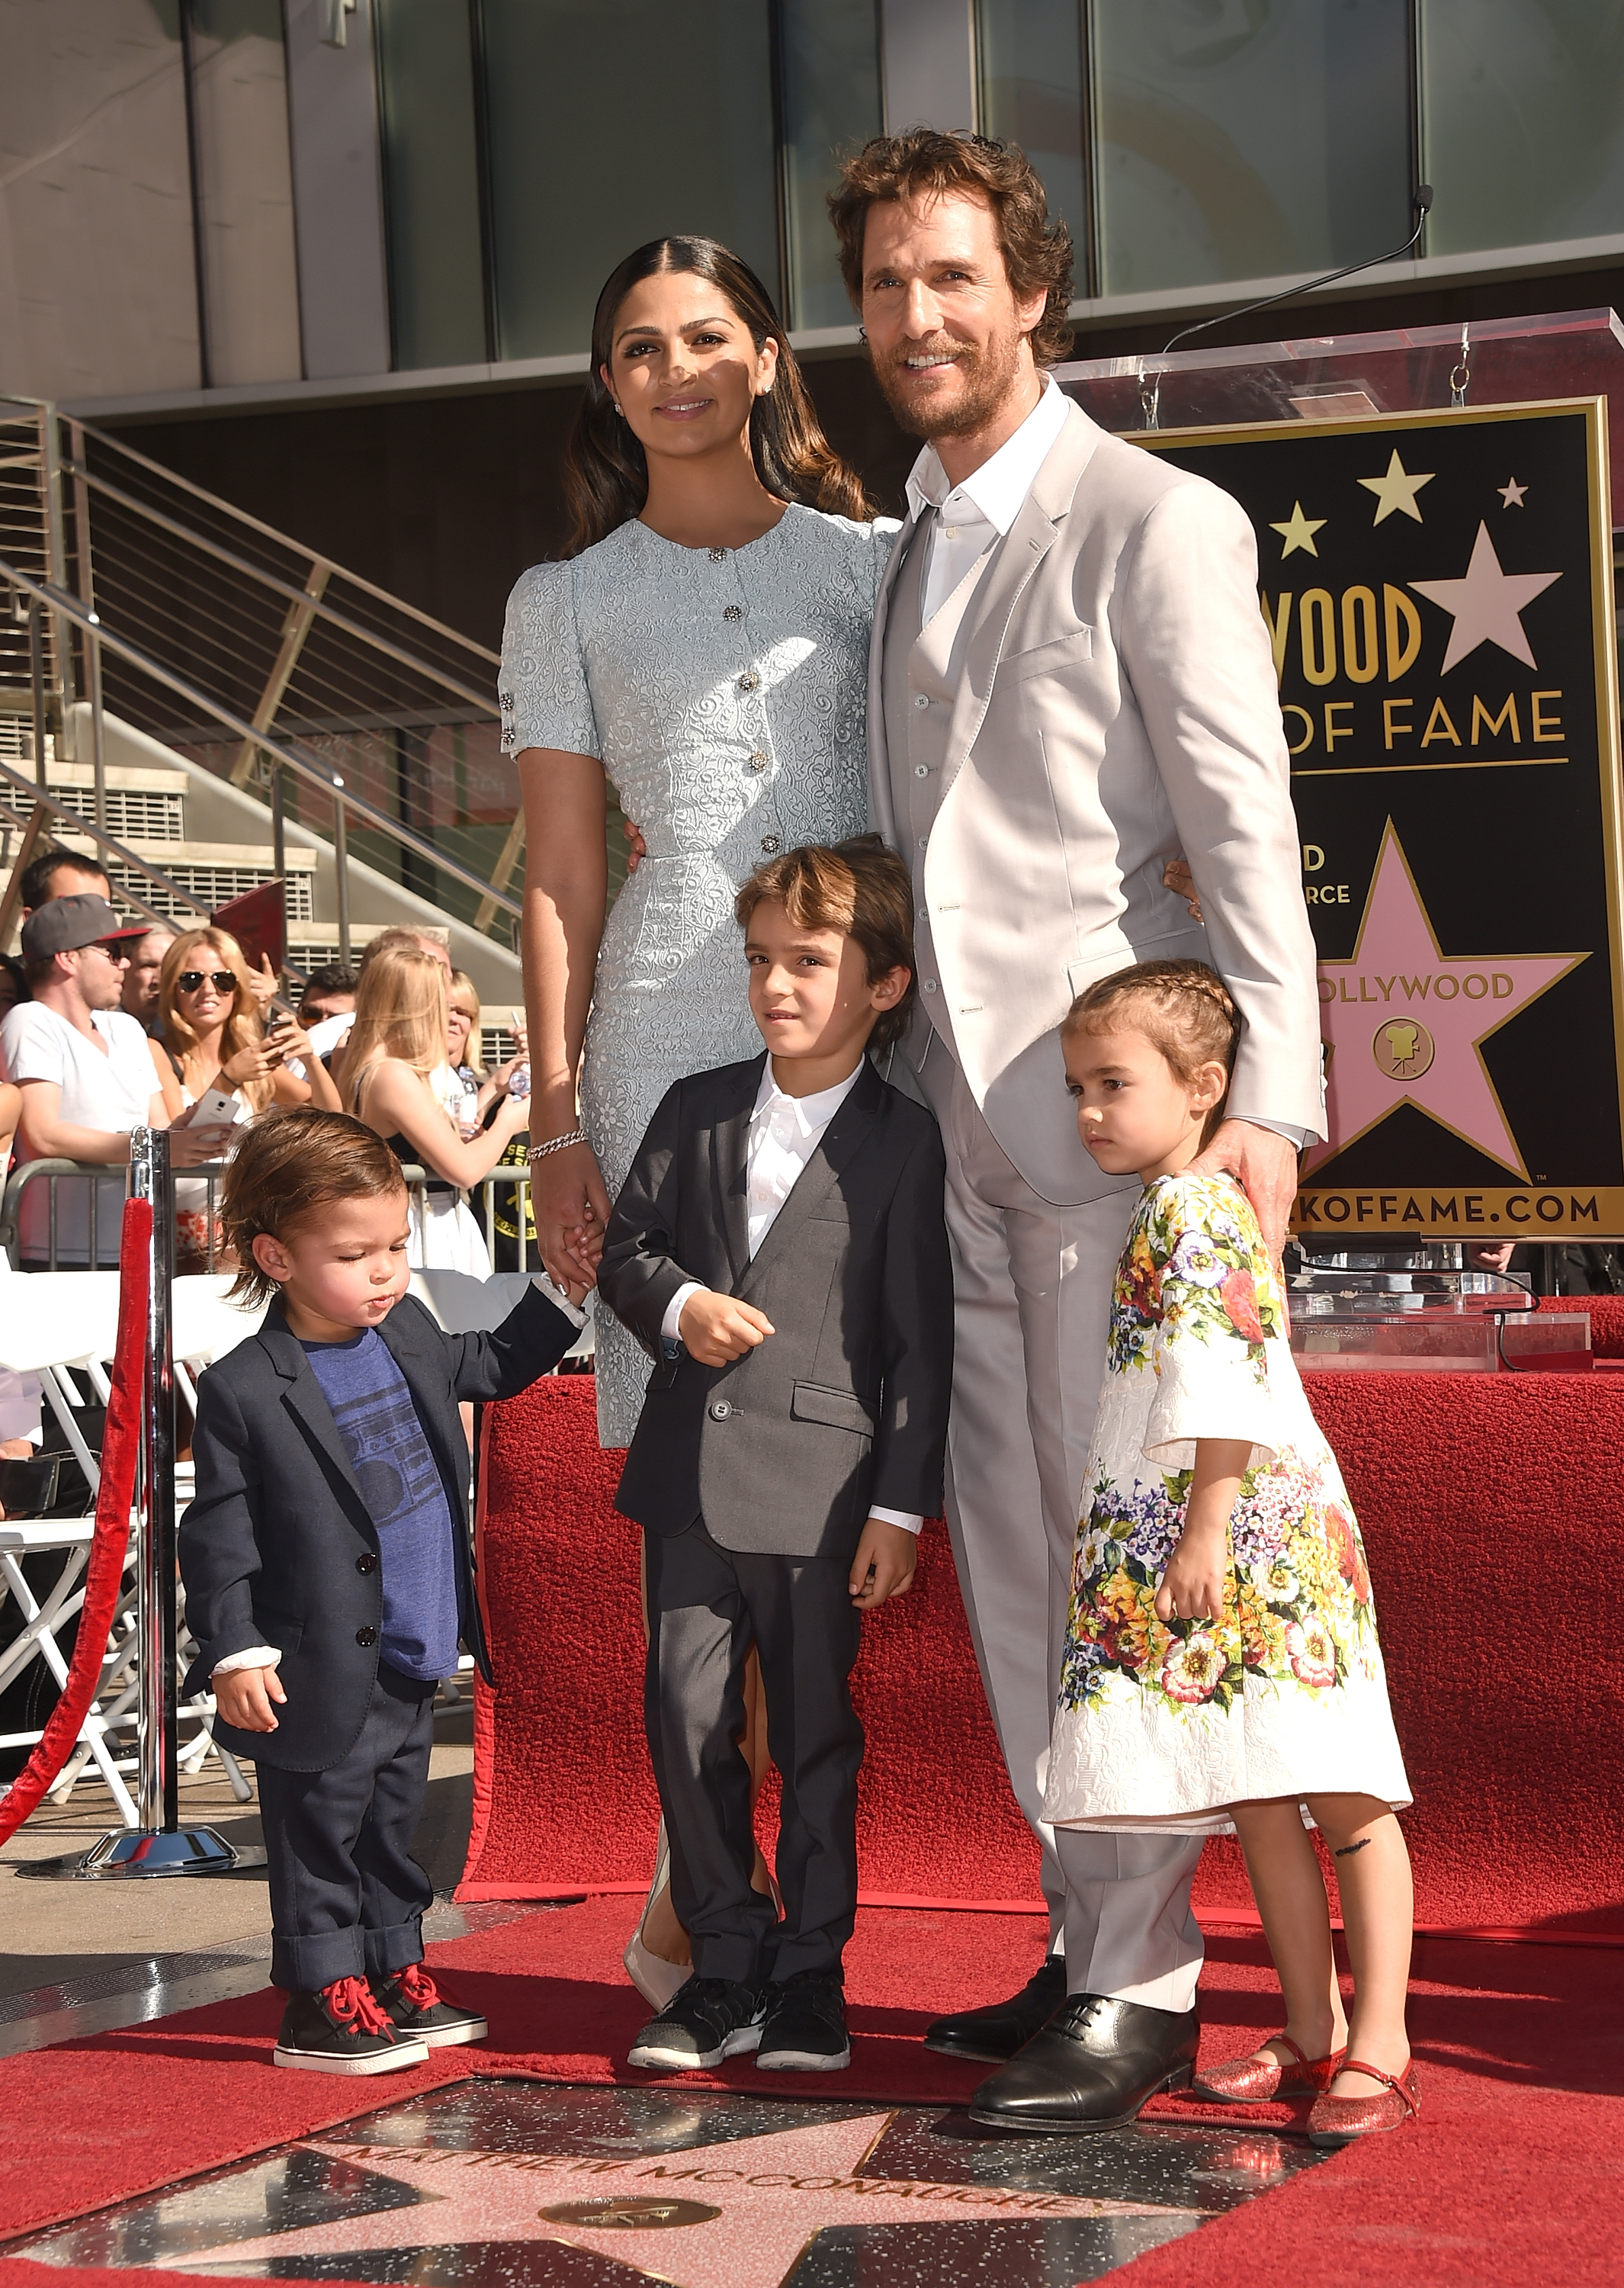 Matthew McConaughey et sa femme Camila Alves et leurs enfants Levi, Livingston, et Vida McConaughey à la cérémonie du Hollywood Walk of Fame pour l'acteur le 17 novembre 2014, à Hollywood, Californie | Source : Getty Images